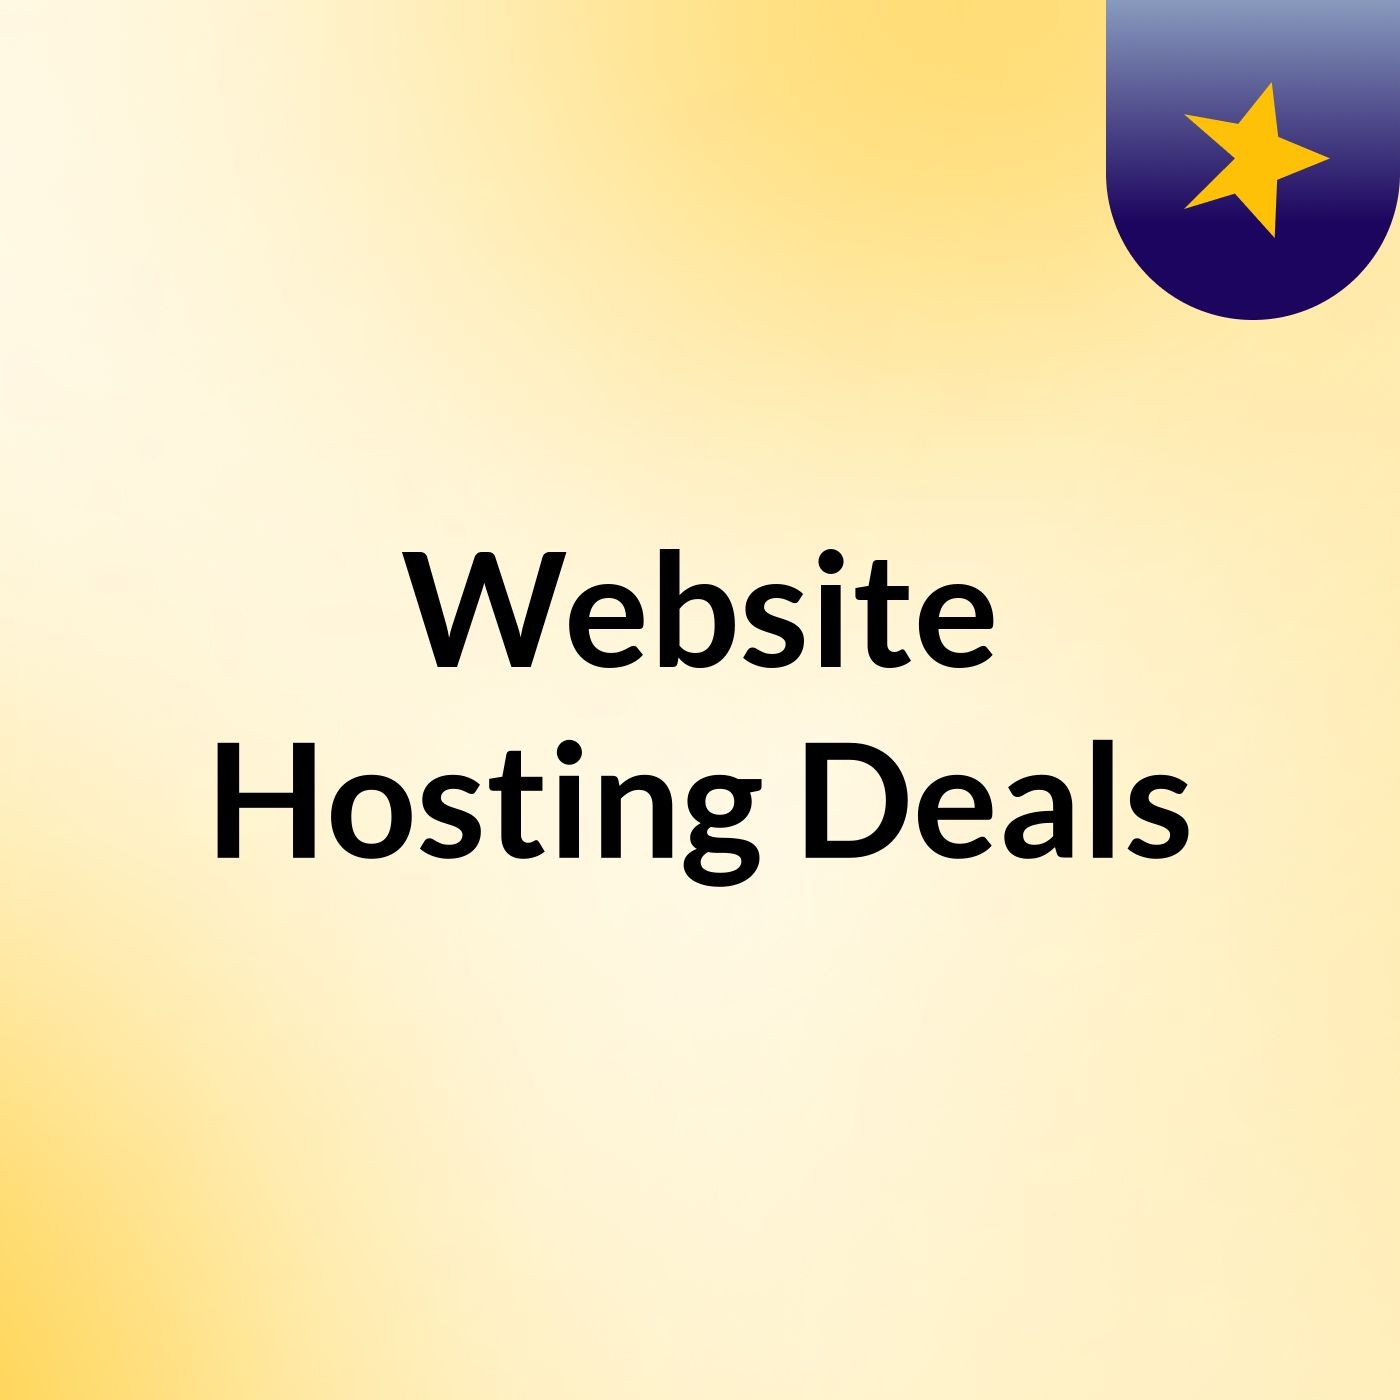 Website Hosting Deals